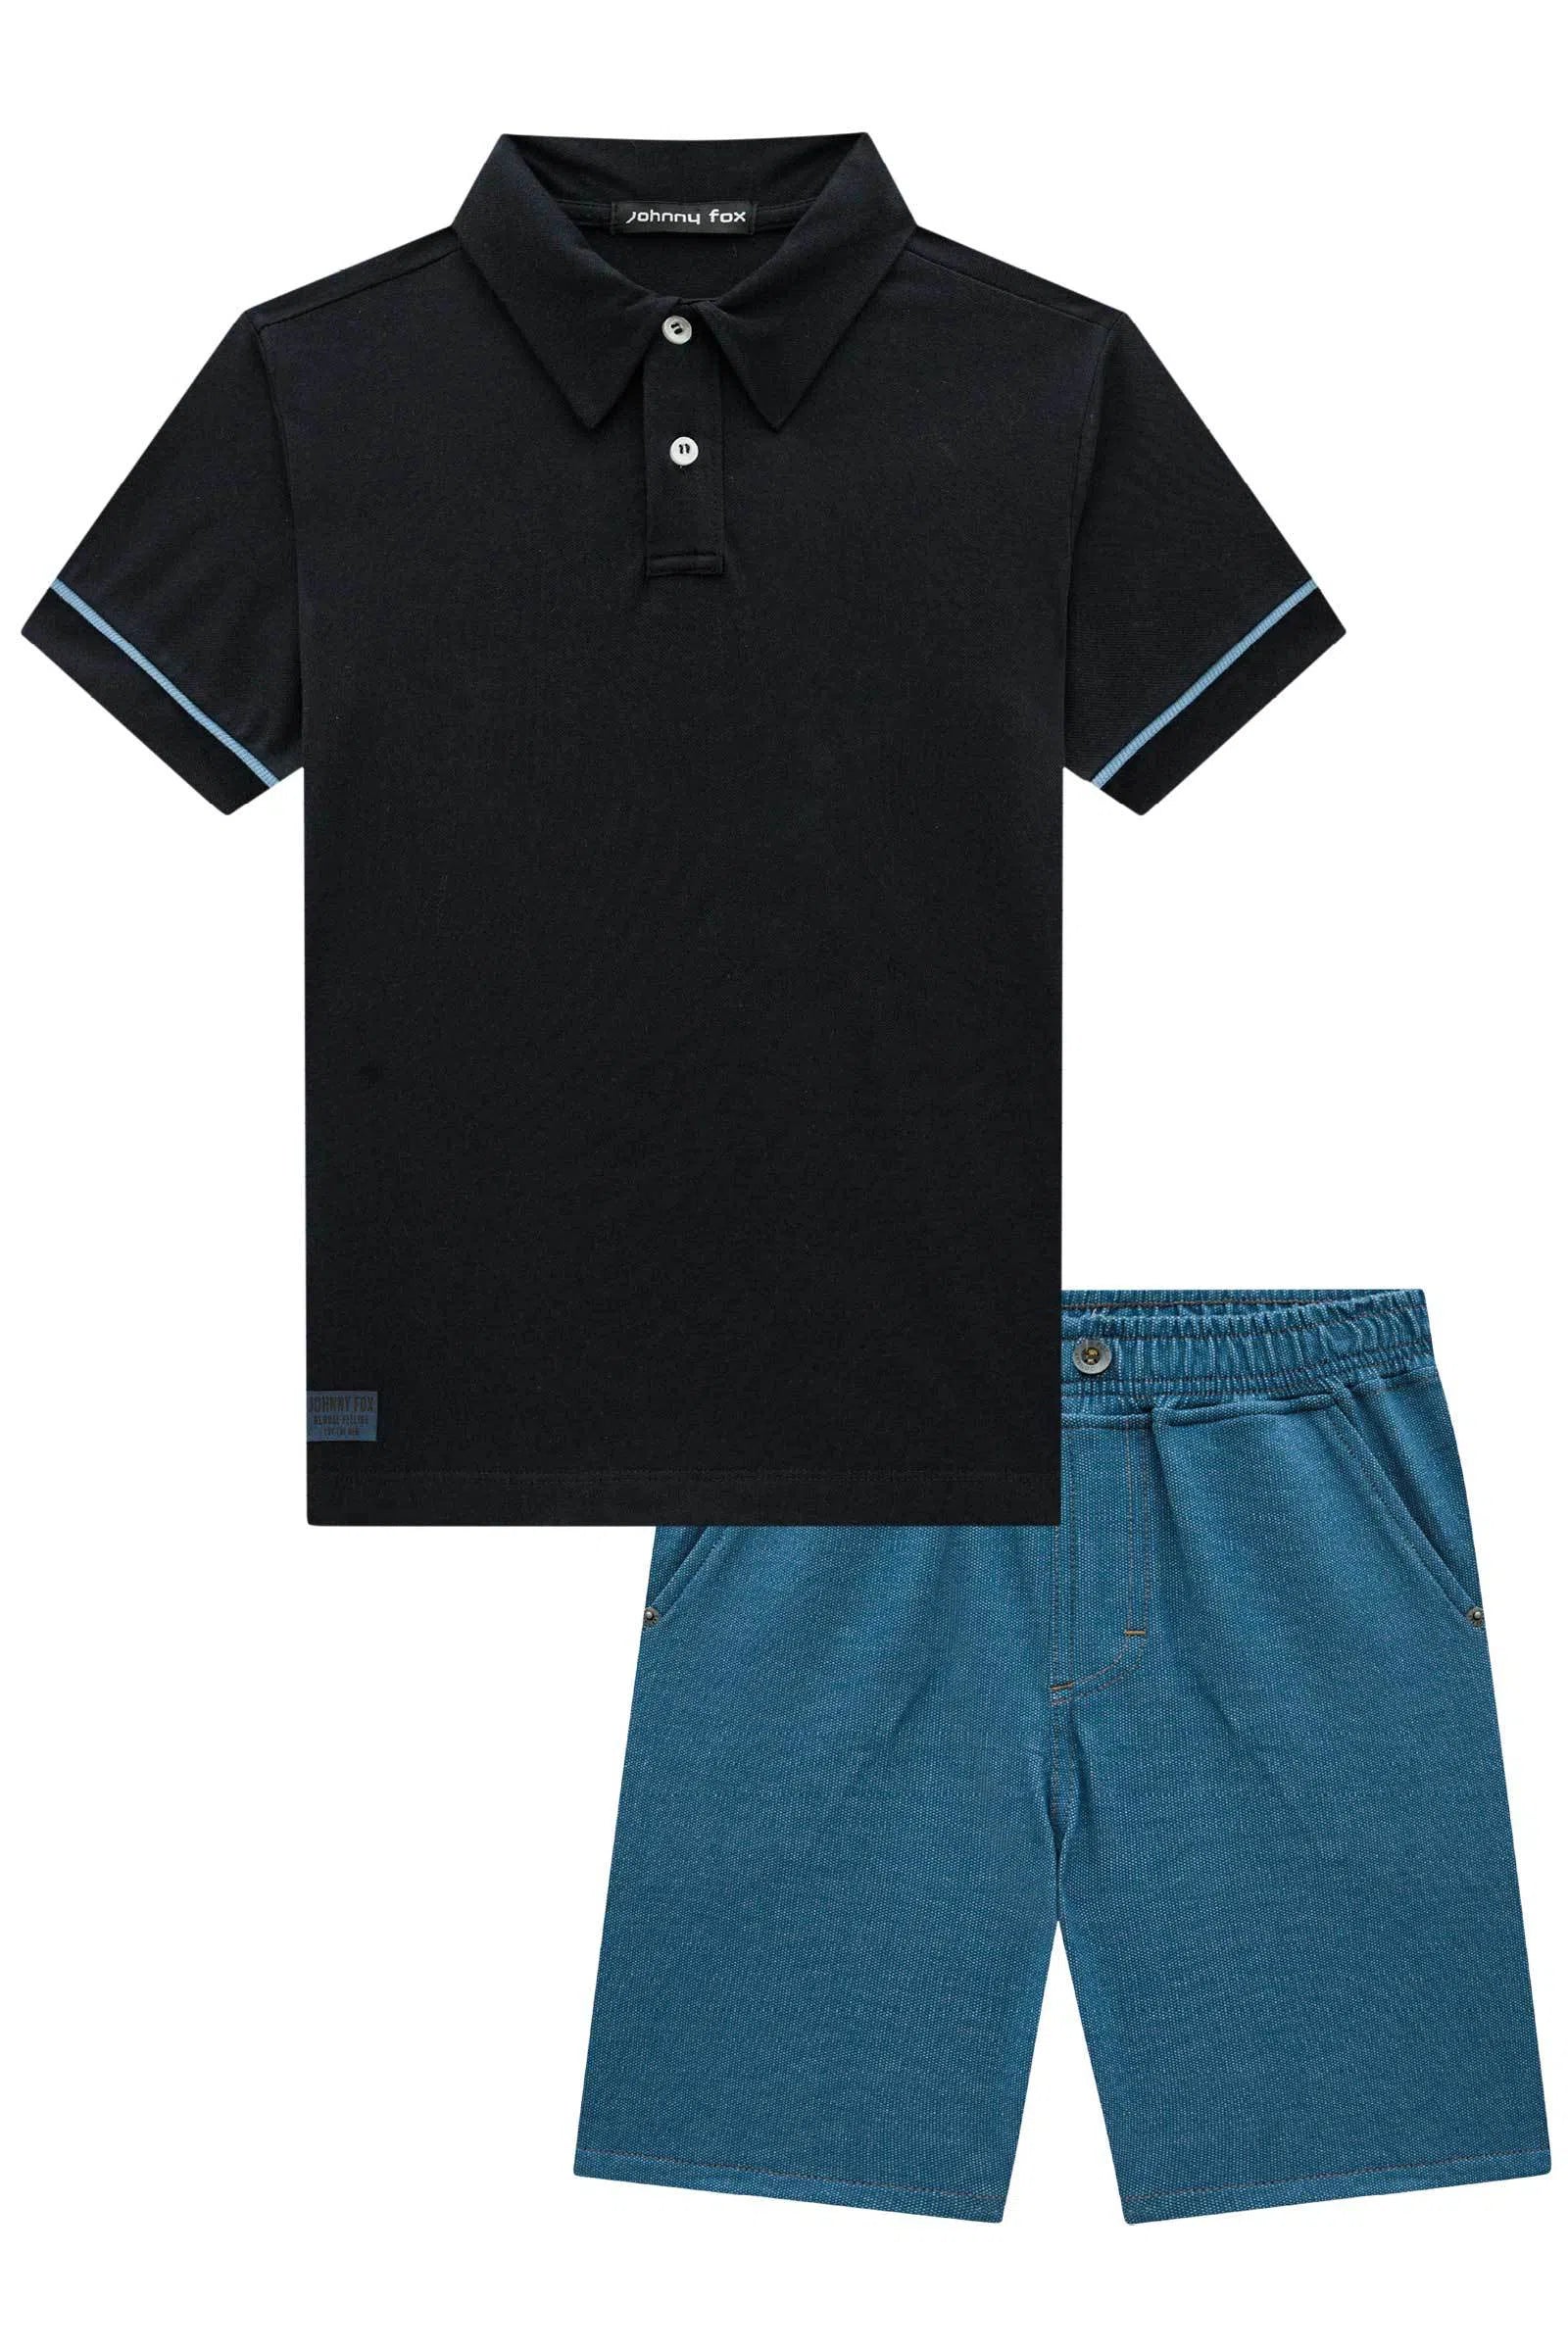 Conjunto de Camisa Polo em Piquet com Elastano e Bermuda em Malha Denim com Elastano 72849 Johnny Fox